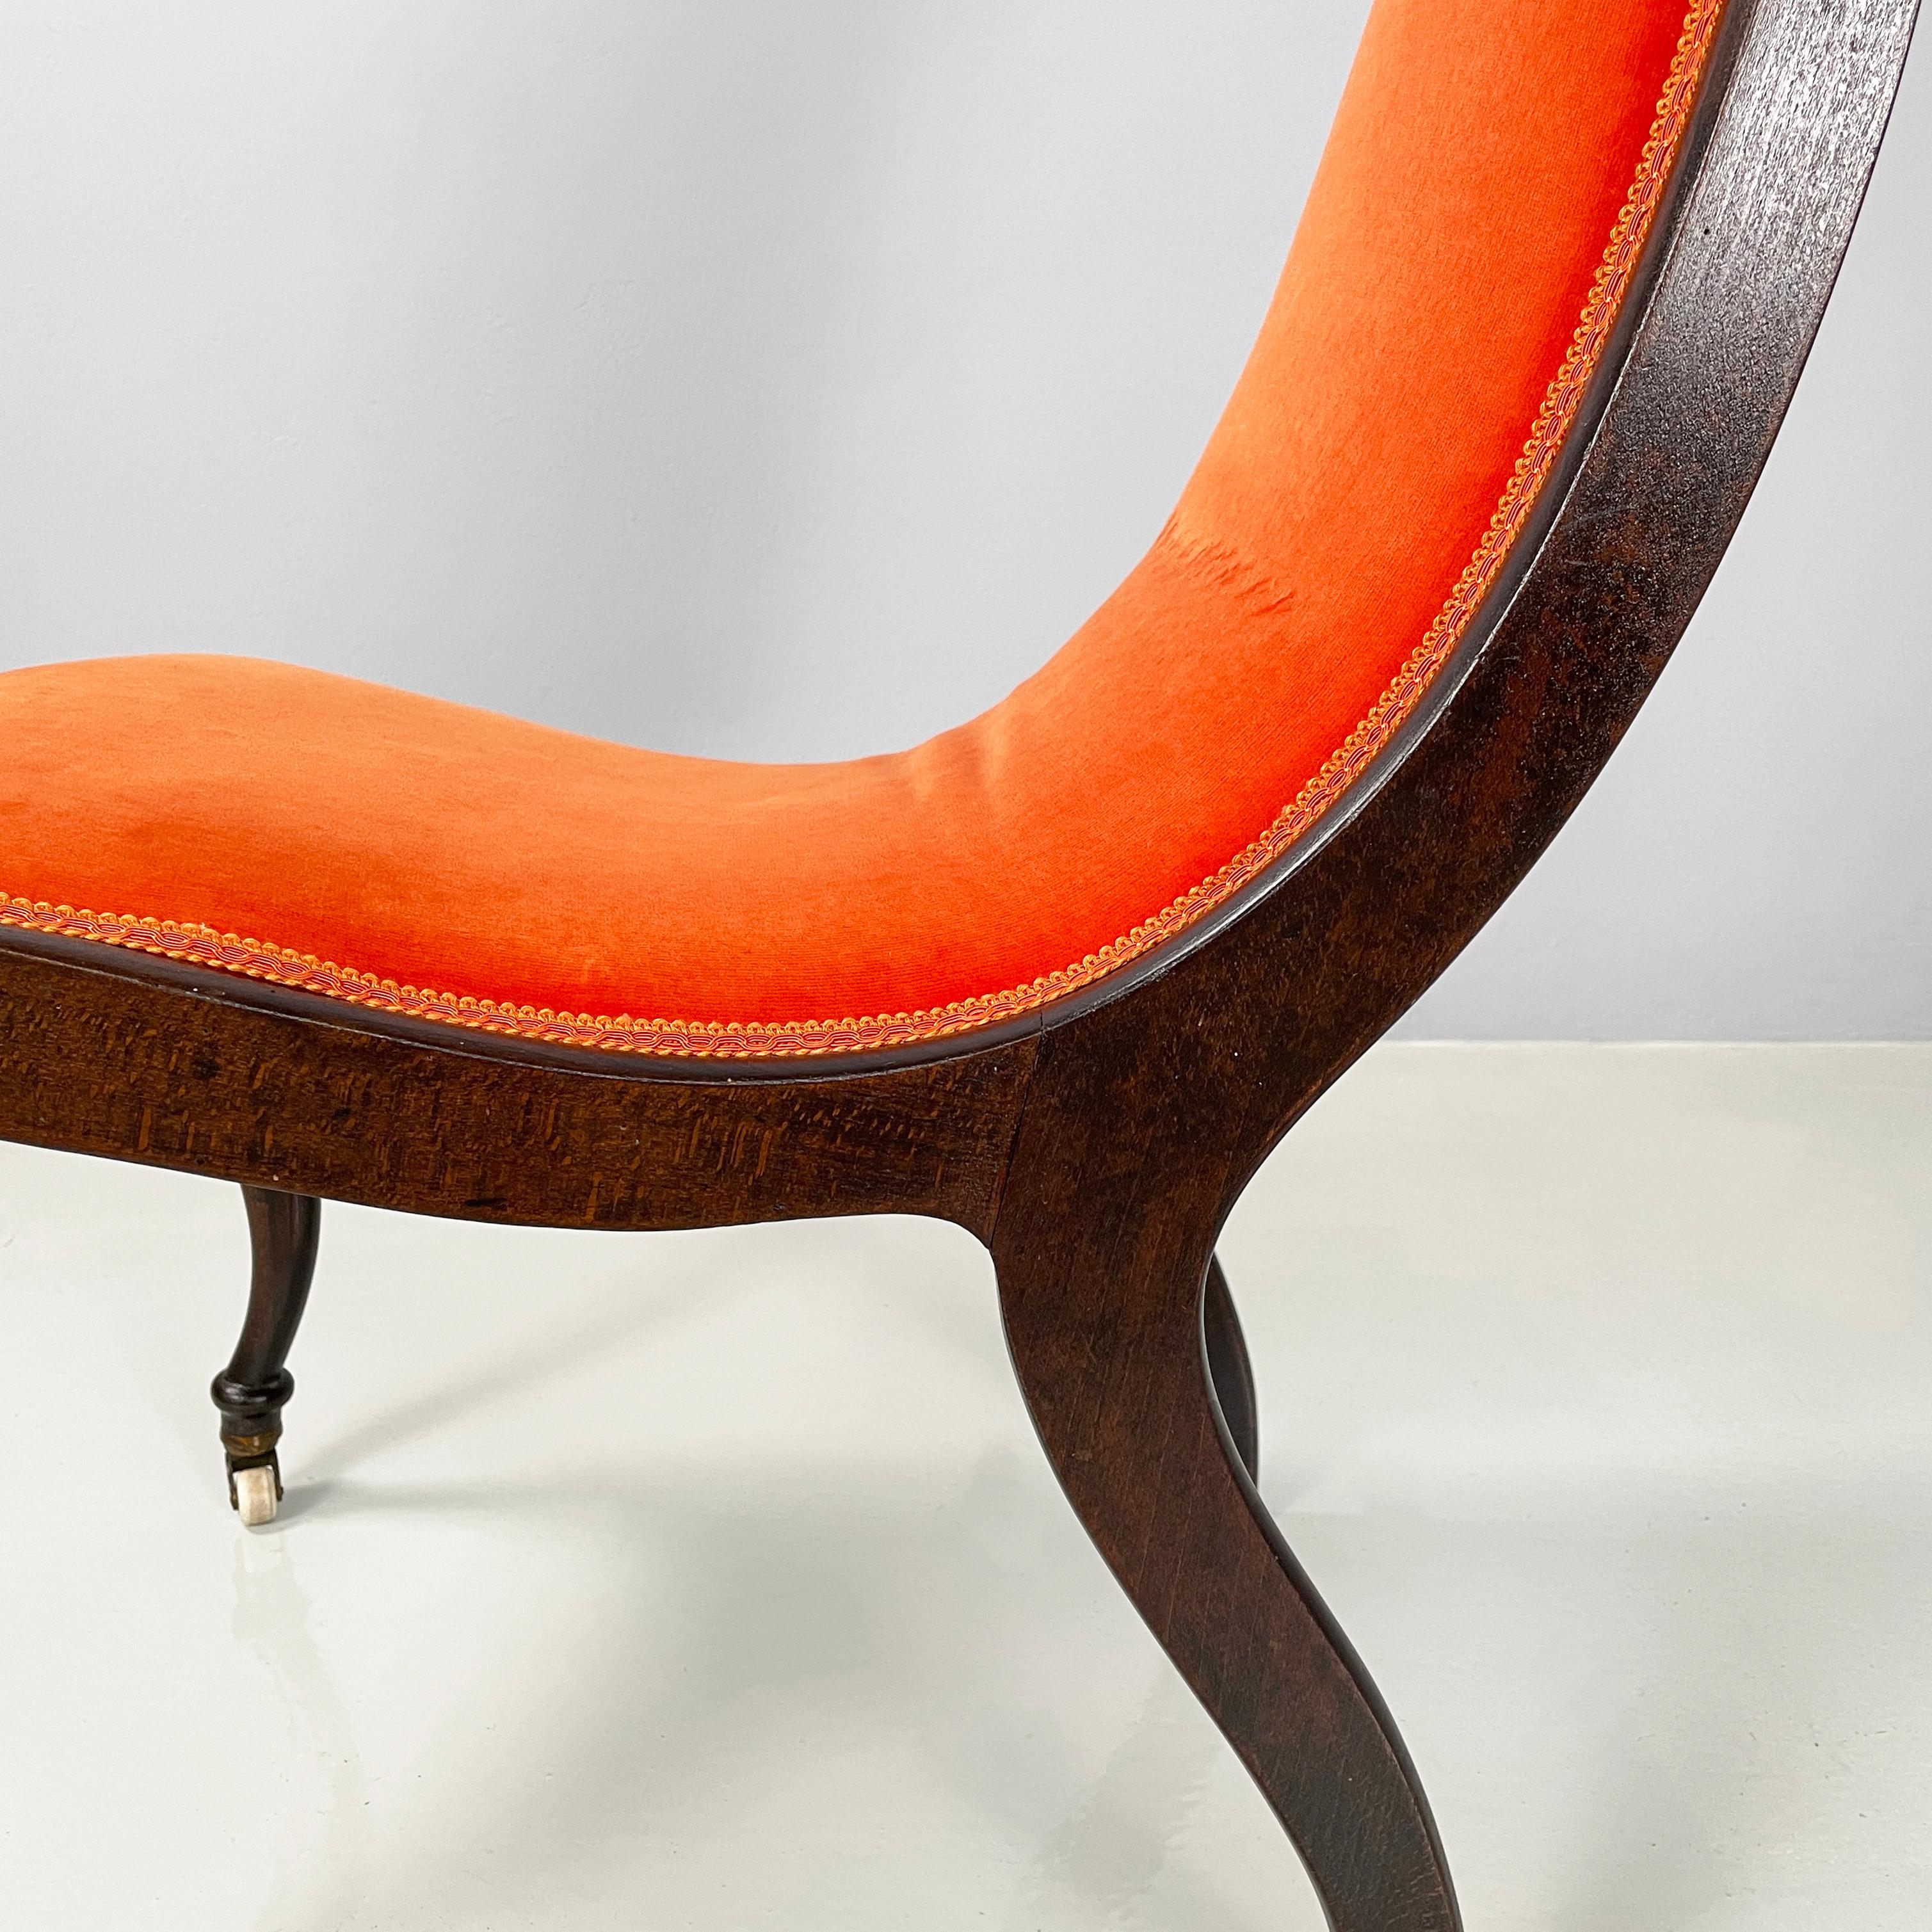 Danish mid-century modern Chair in orange velvet and dark wood, 1950s For Sale 8